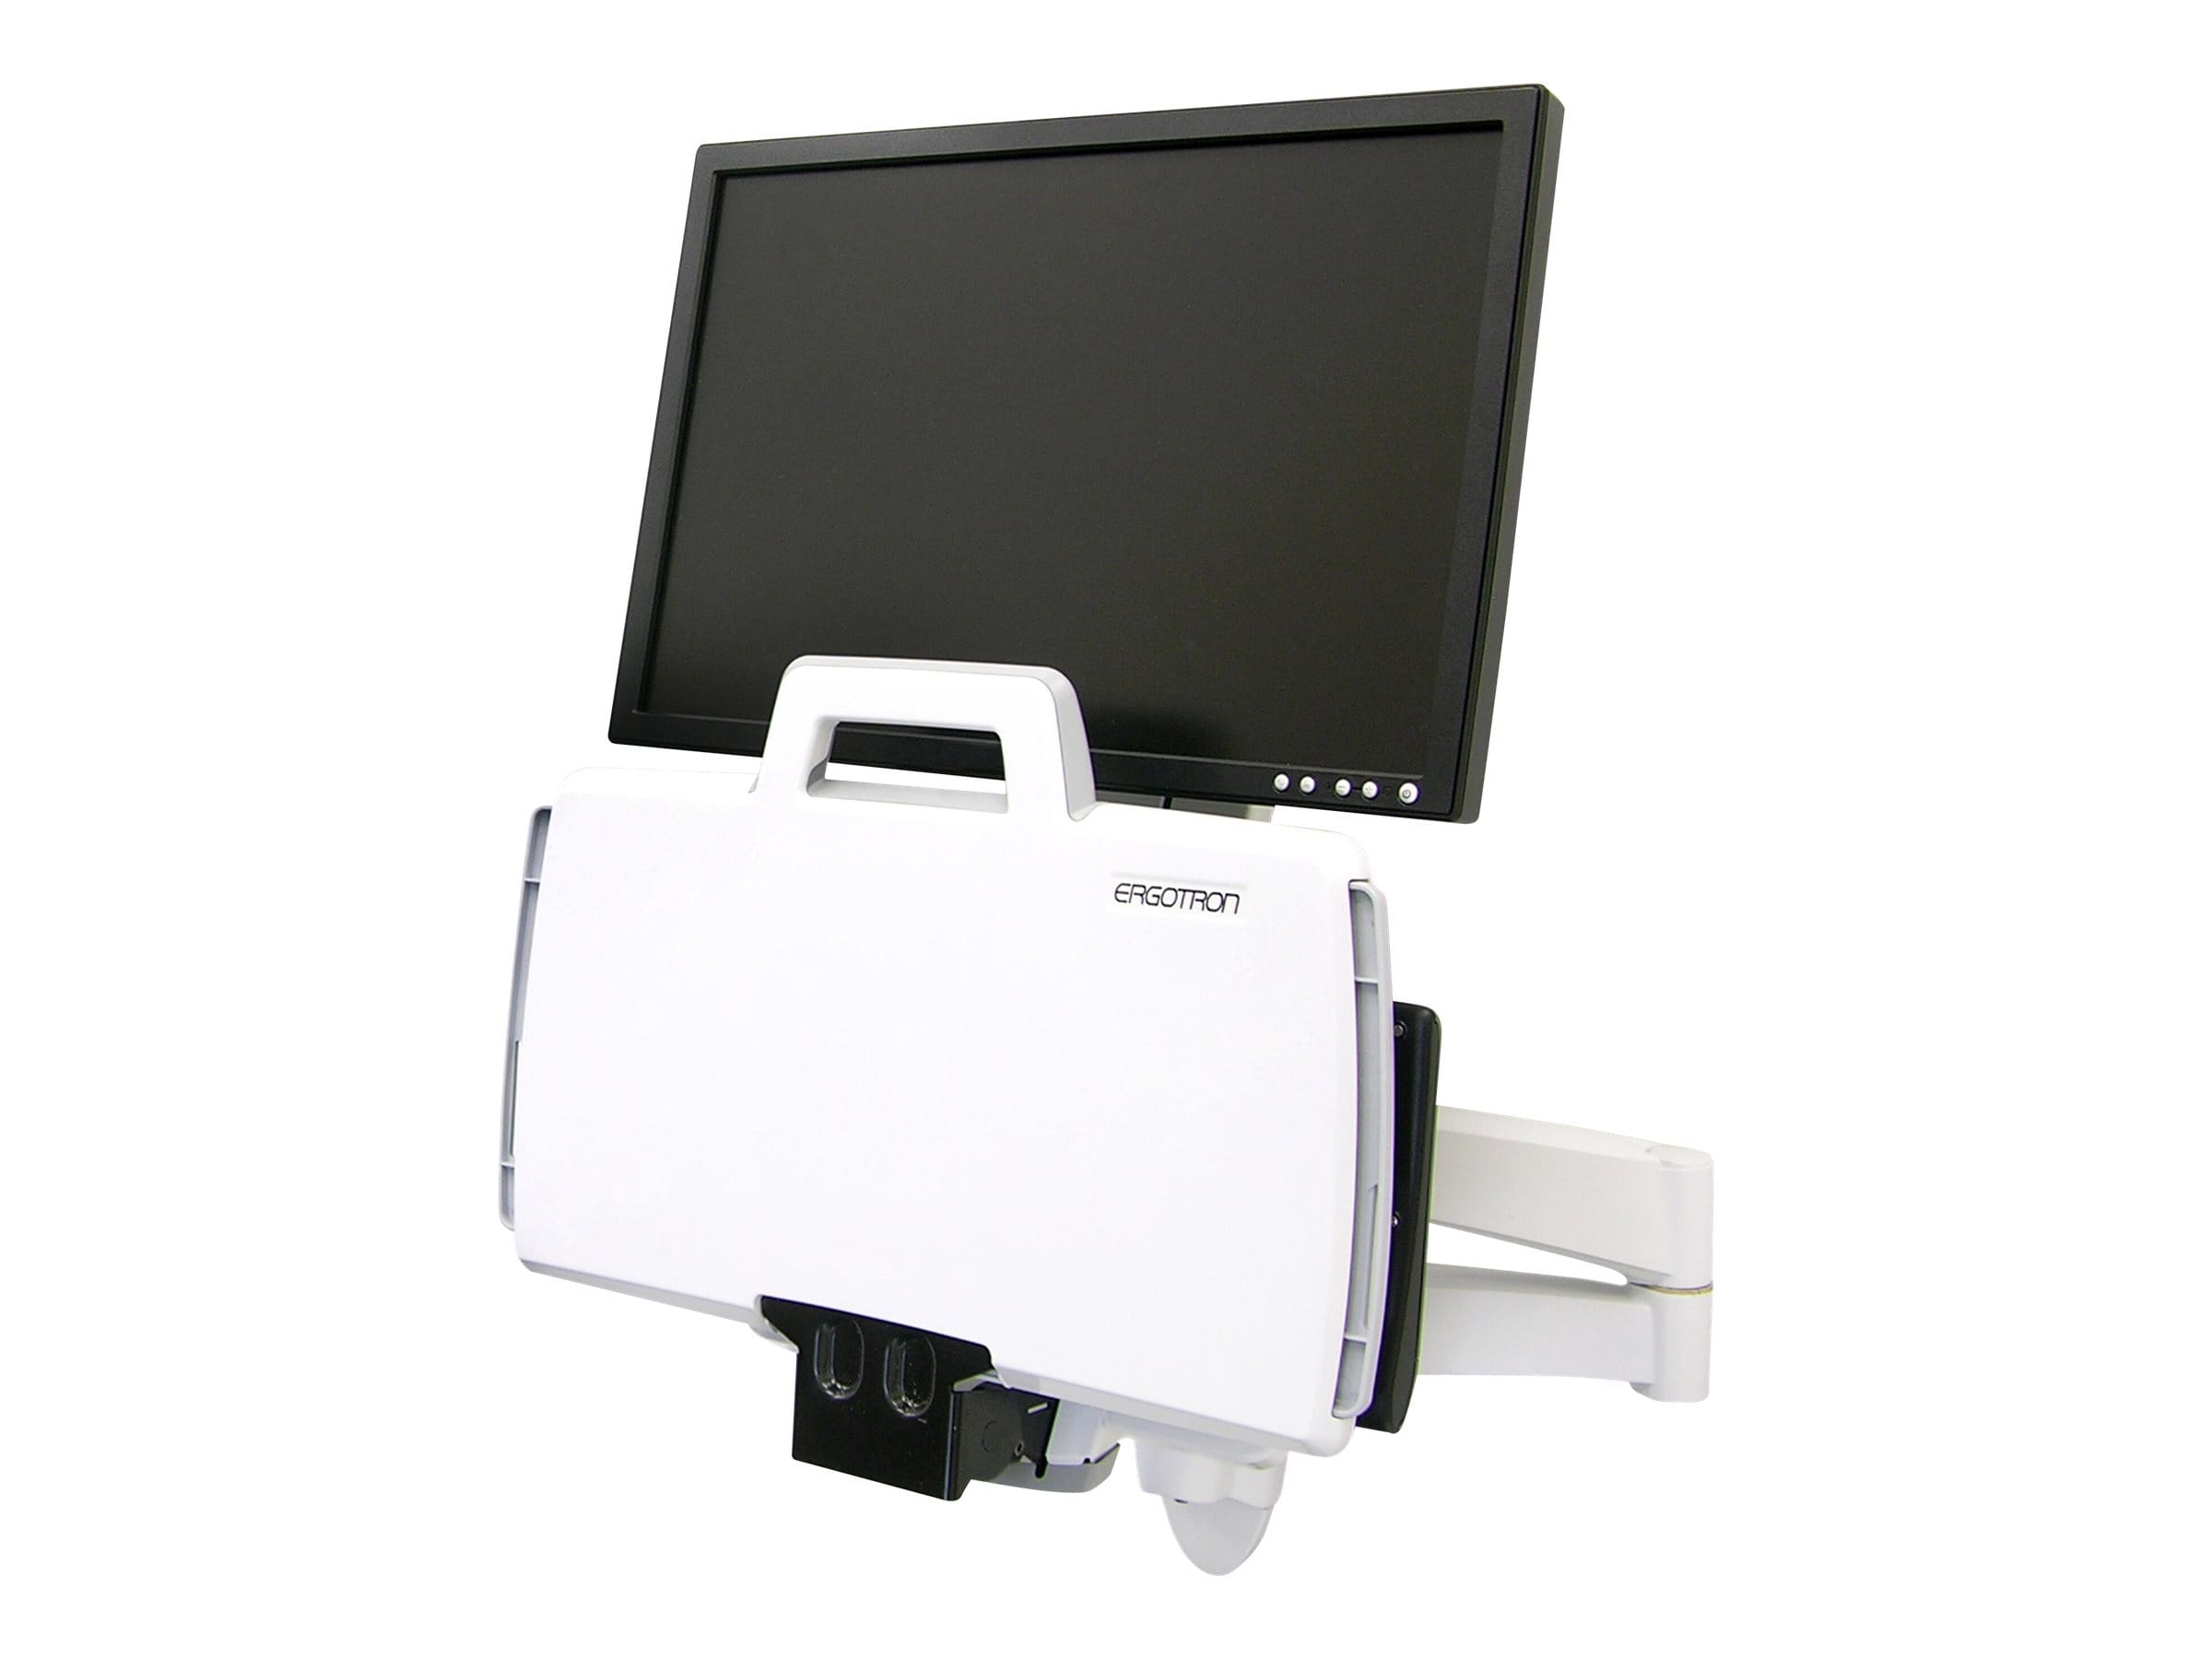 Ergotron 200 Series - Befestigungskit (Gelenkarm, Barcode-Scanner-Halter, Tastaturablage mit linker/rechter Mausablage) - für LCD-Display / PC-Ausrüstung - Stahl - weiß - Bildschirmgröße: bis zu 61 cm (bis zu 24 Zoll)